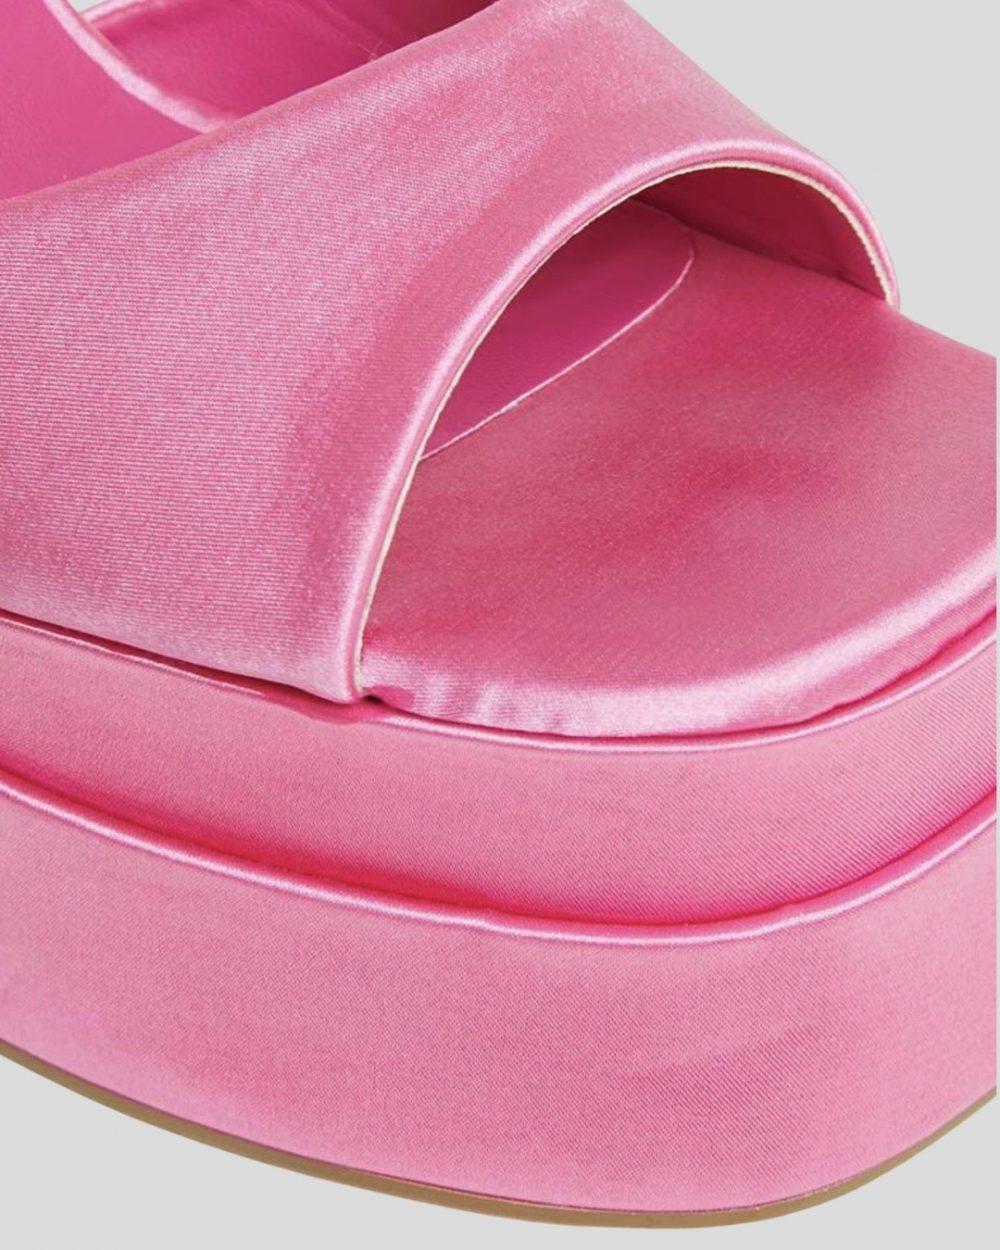 pink-eclectic-platform-heels-onrotate